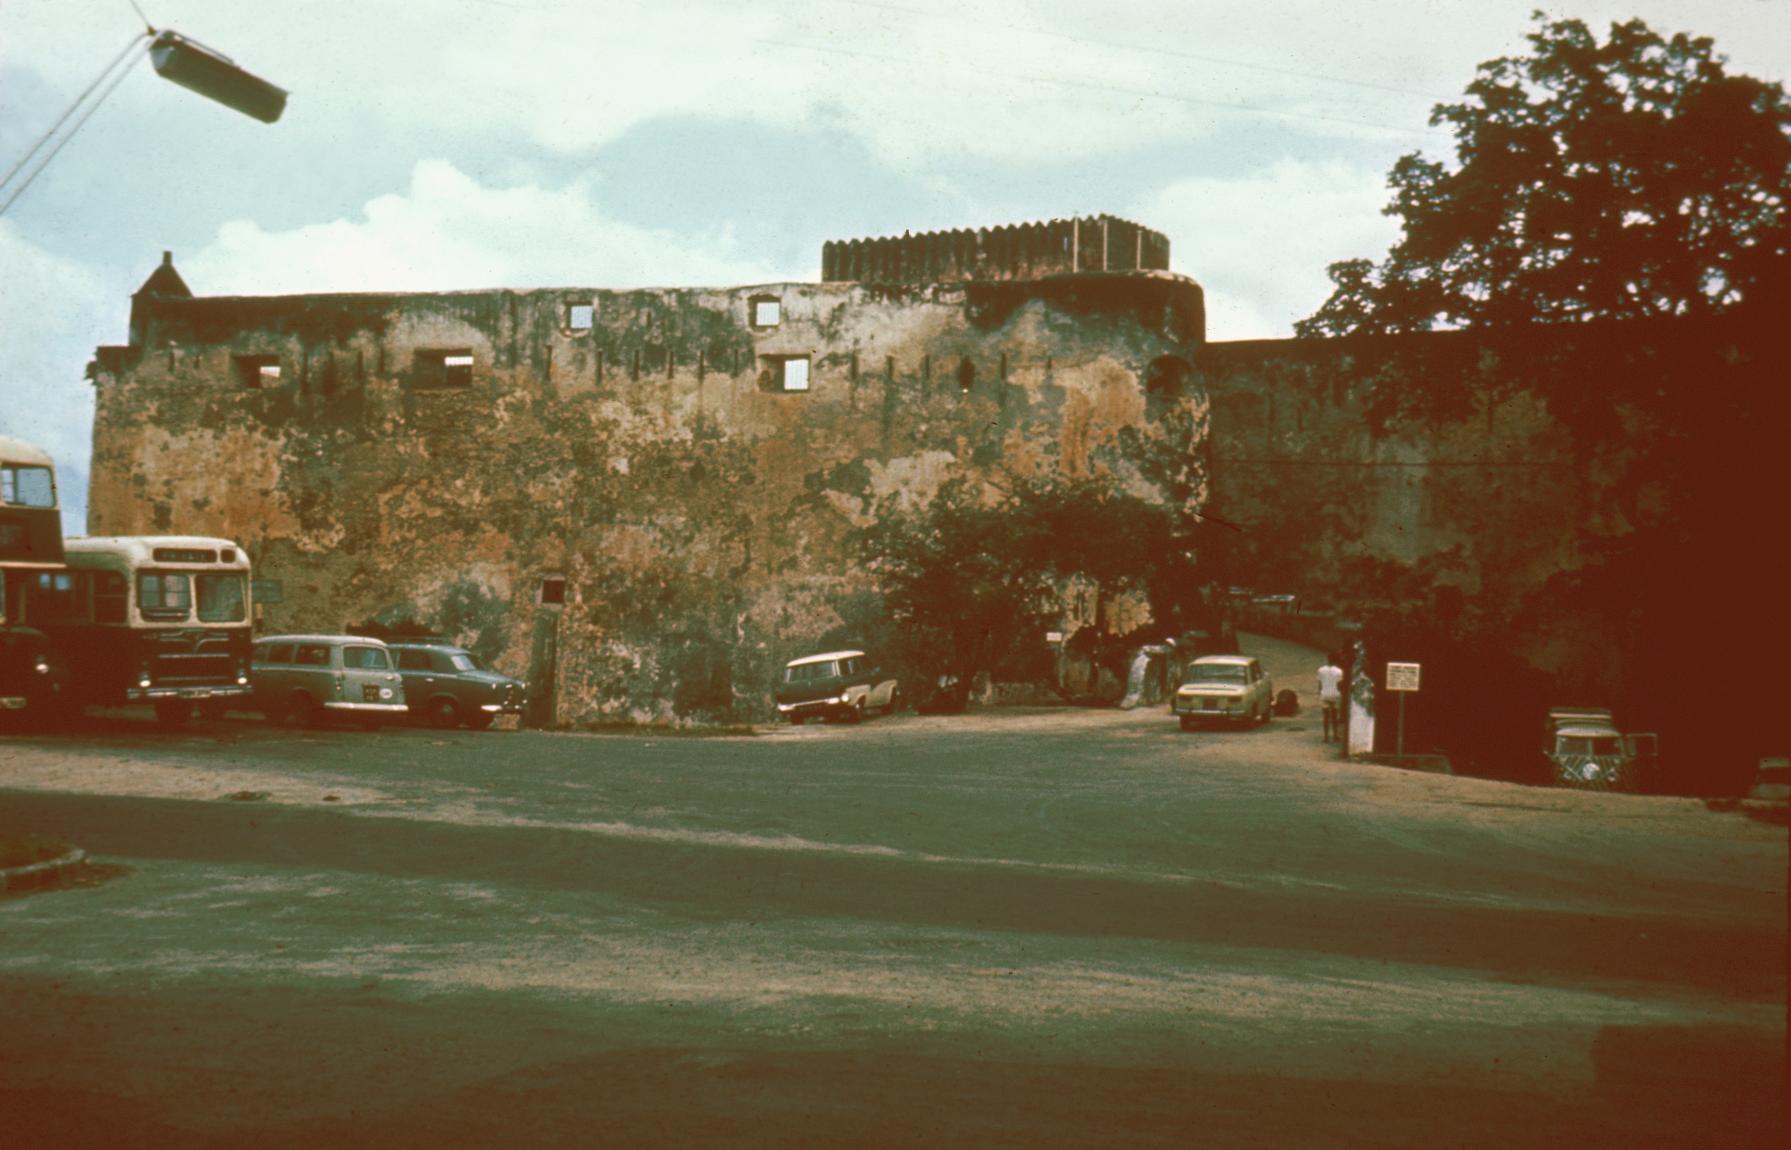 Fort Jesus, Built in 1620, at Mombasa